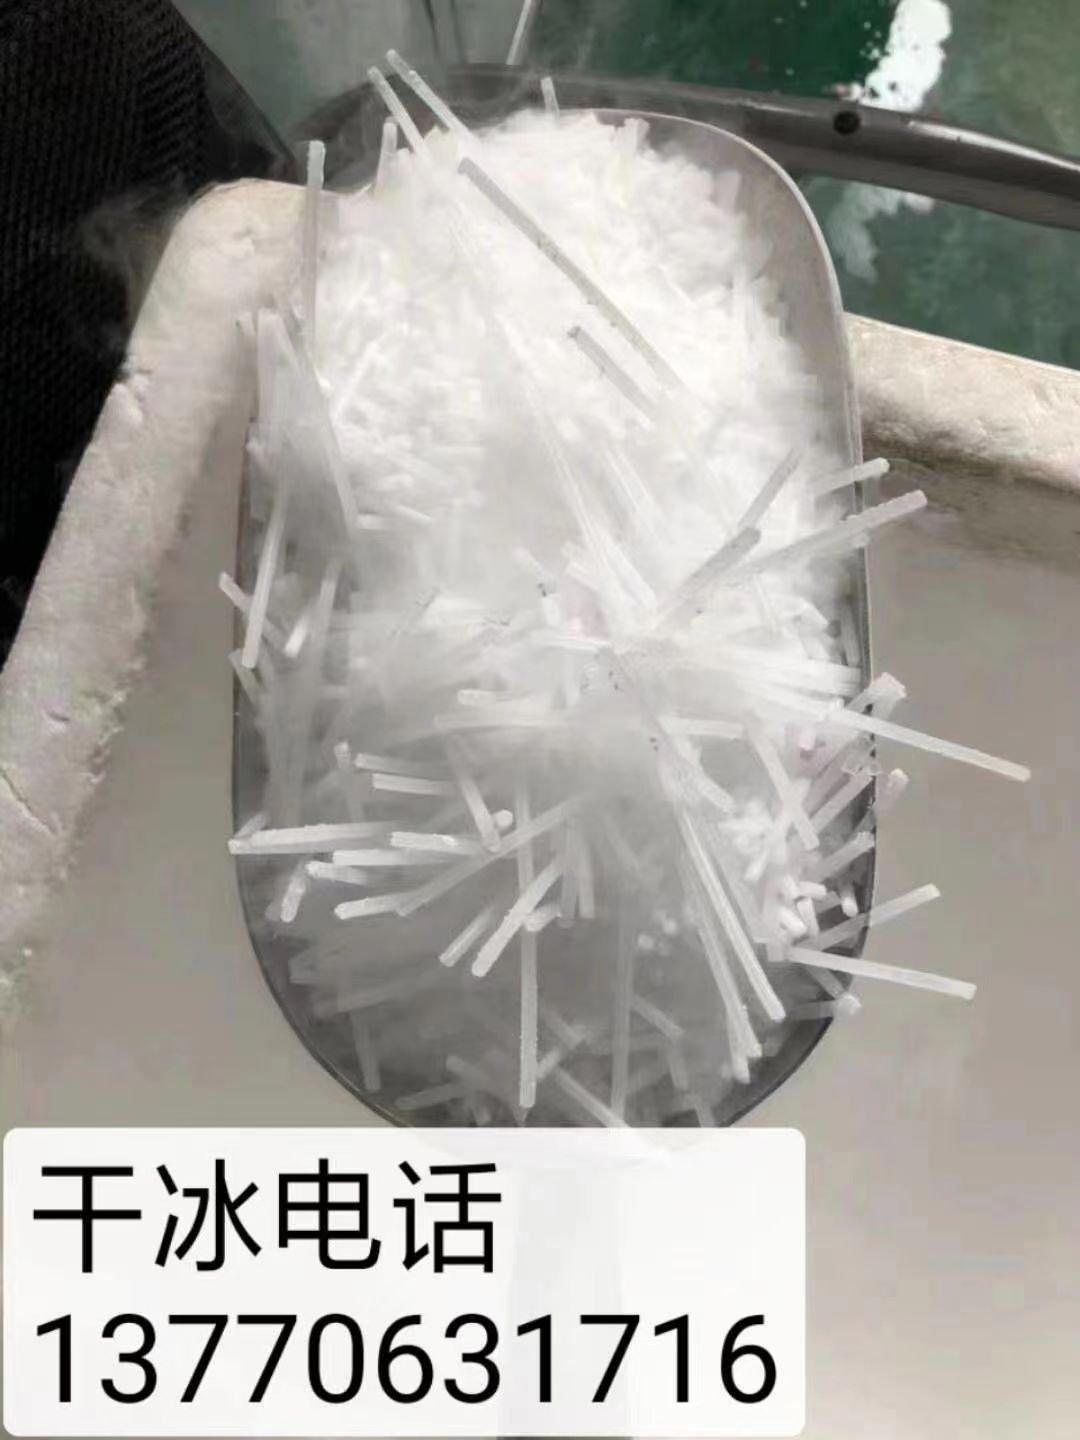 南京干冰 干冰温度 干冰保存 干冰运输 干冰图片 干冰